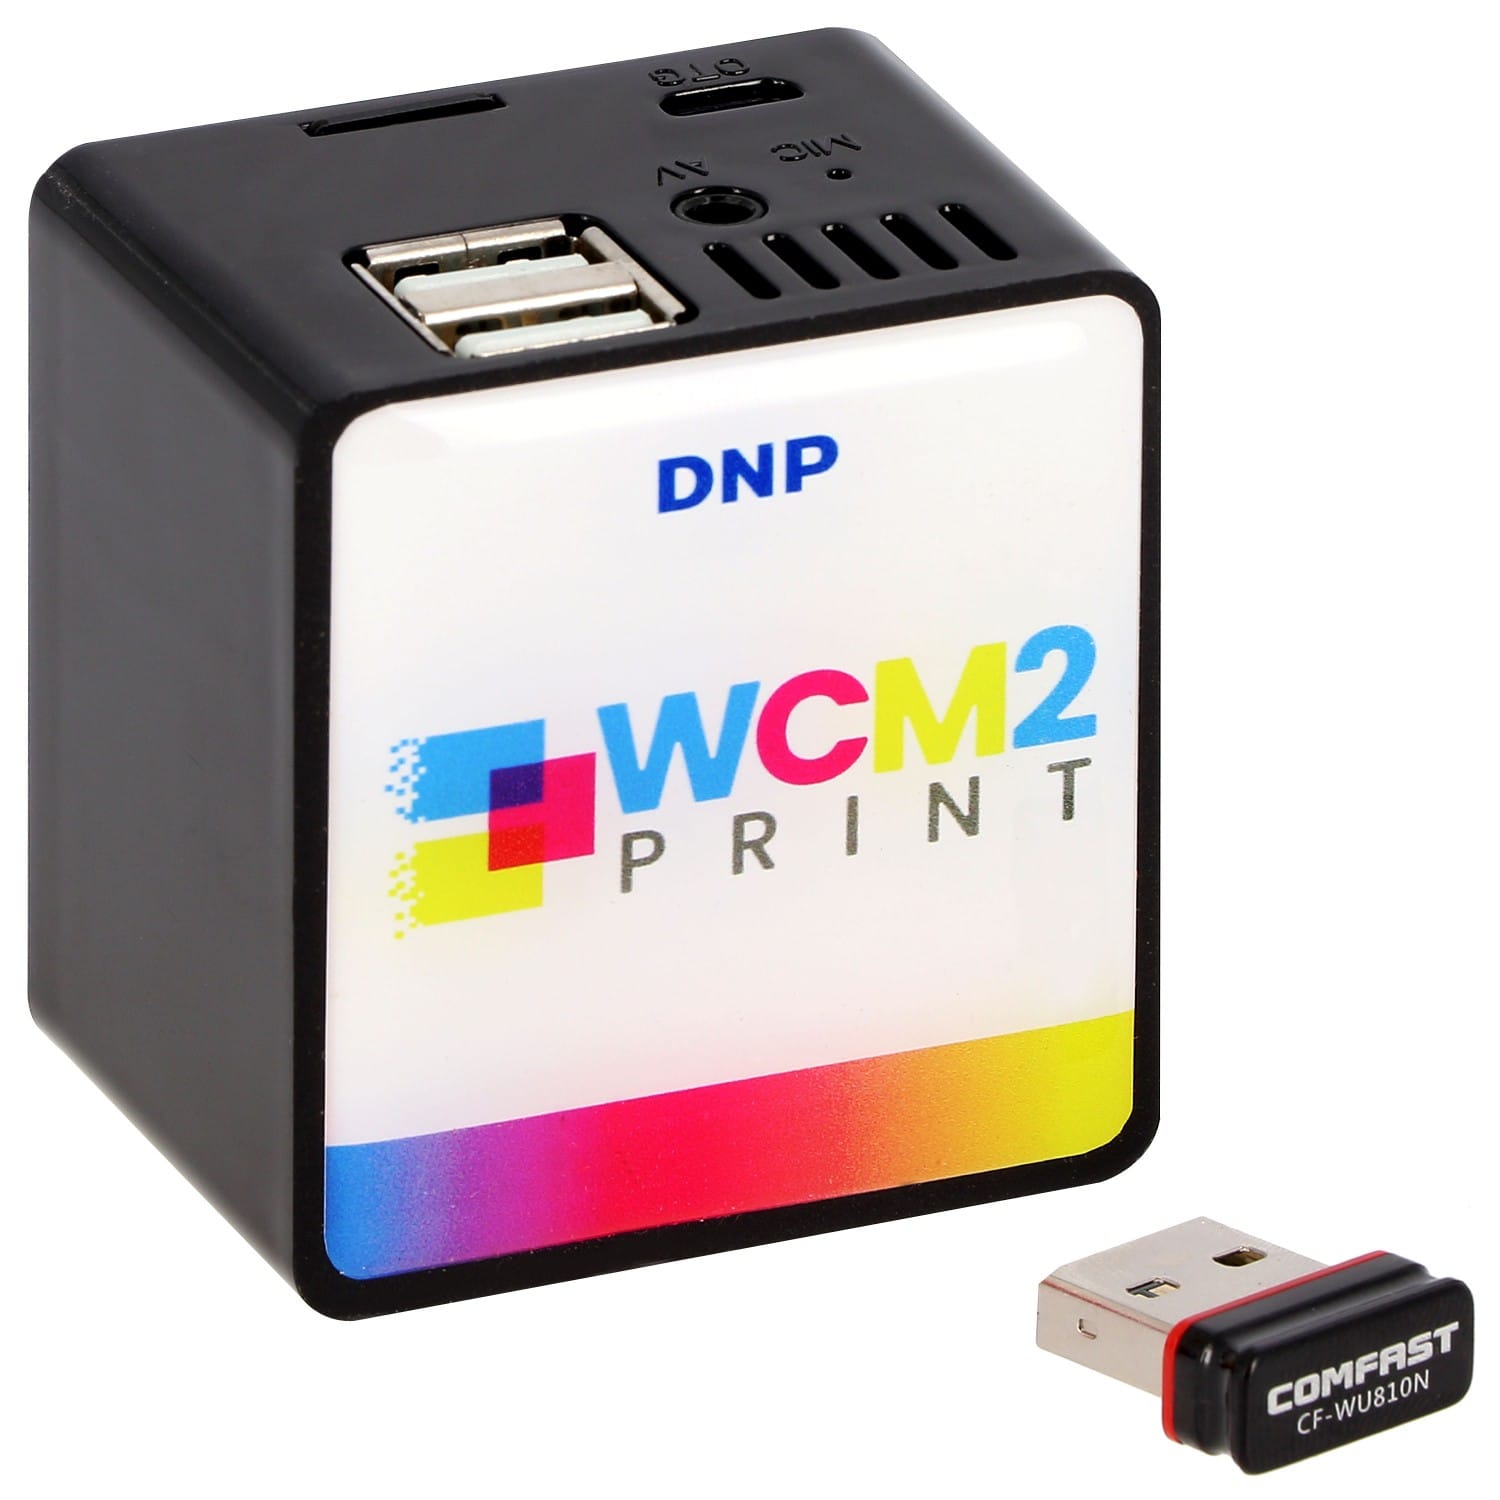 DNP WCM2 Print - Wireless Connect Module 2 (sans fil) pour Imprimante DNP